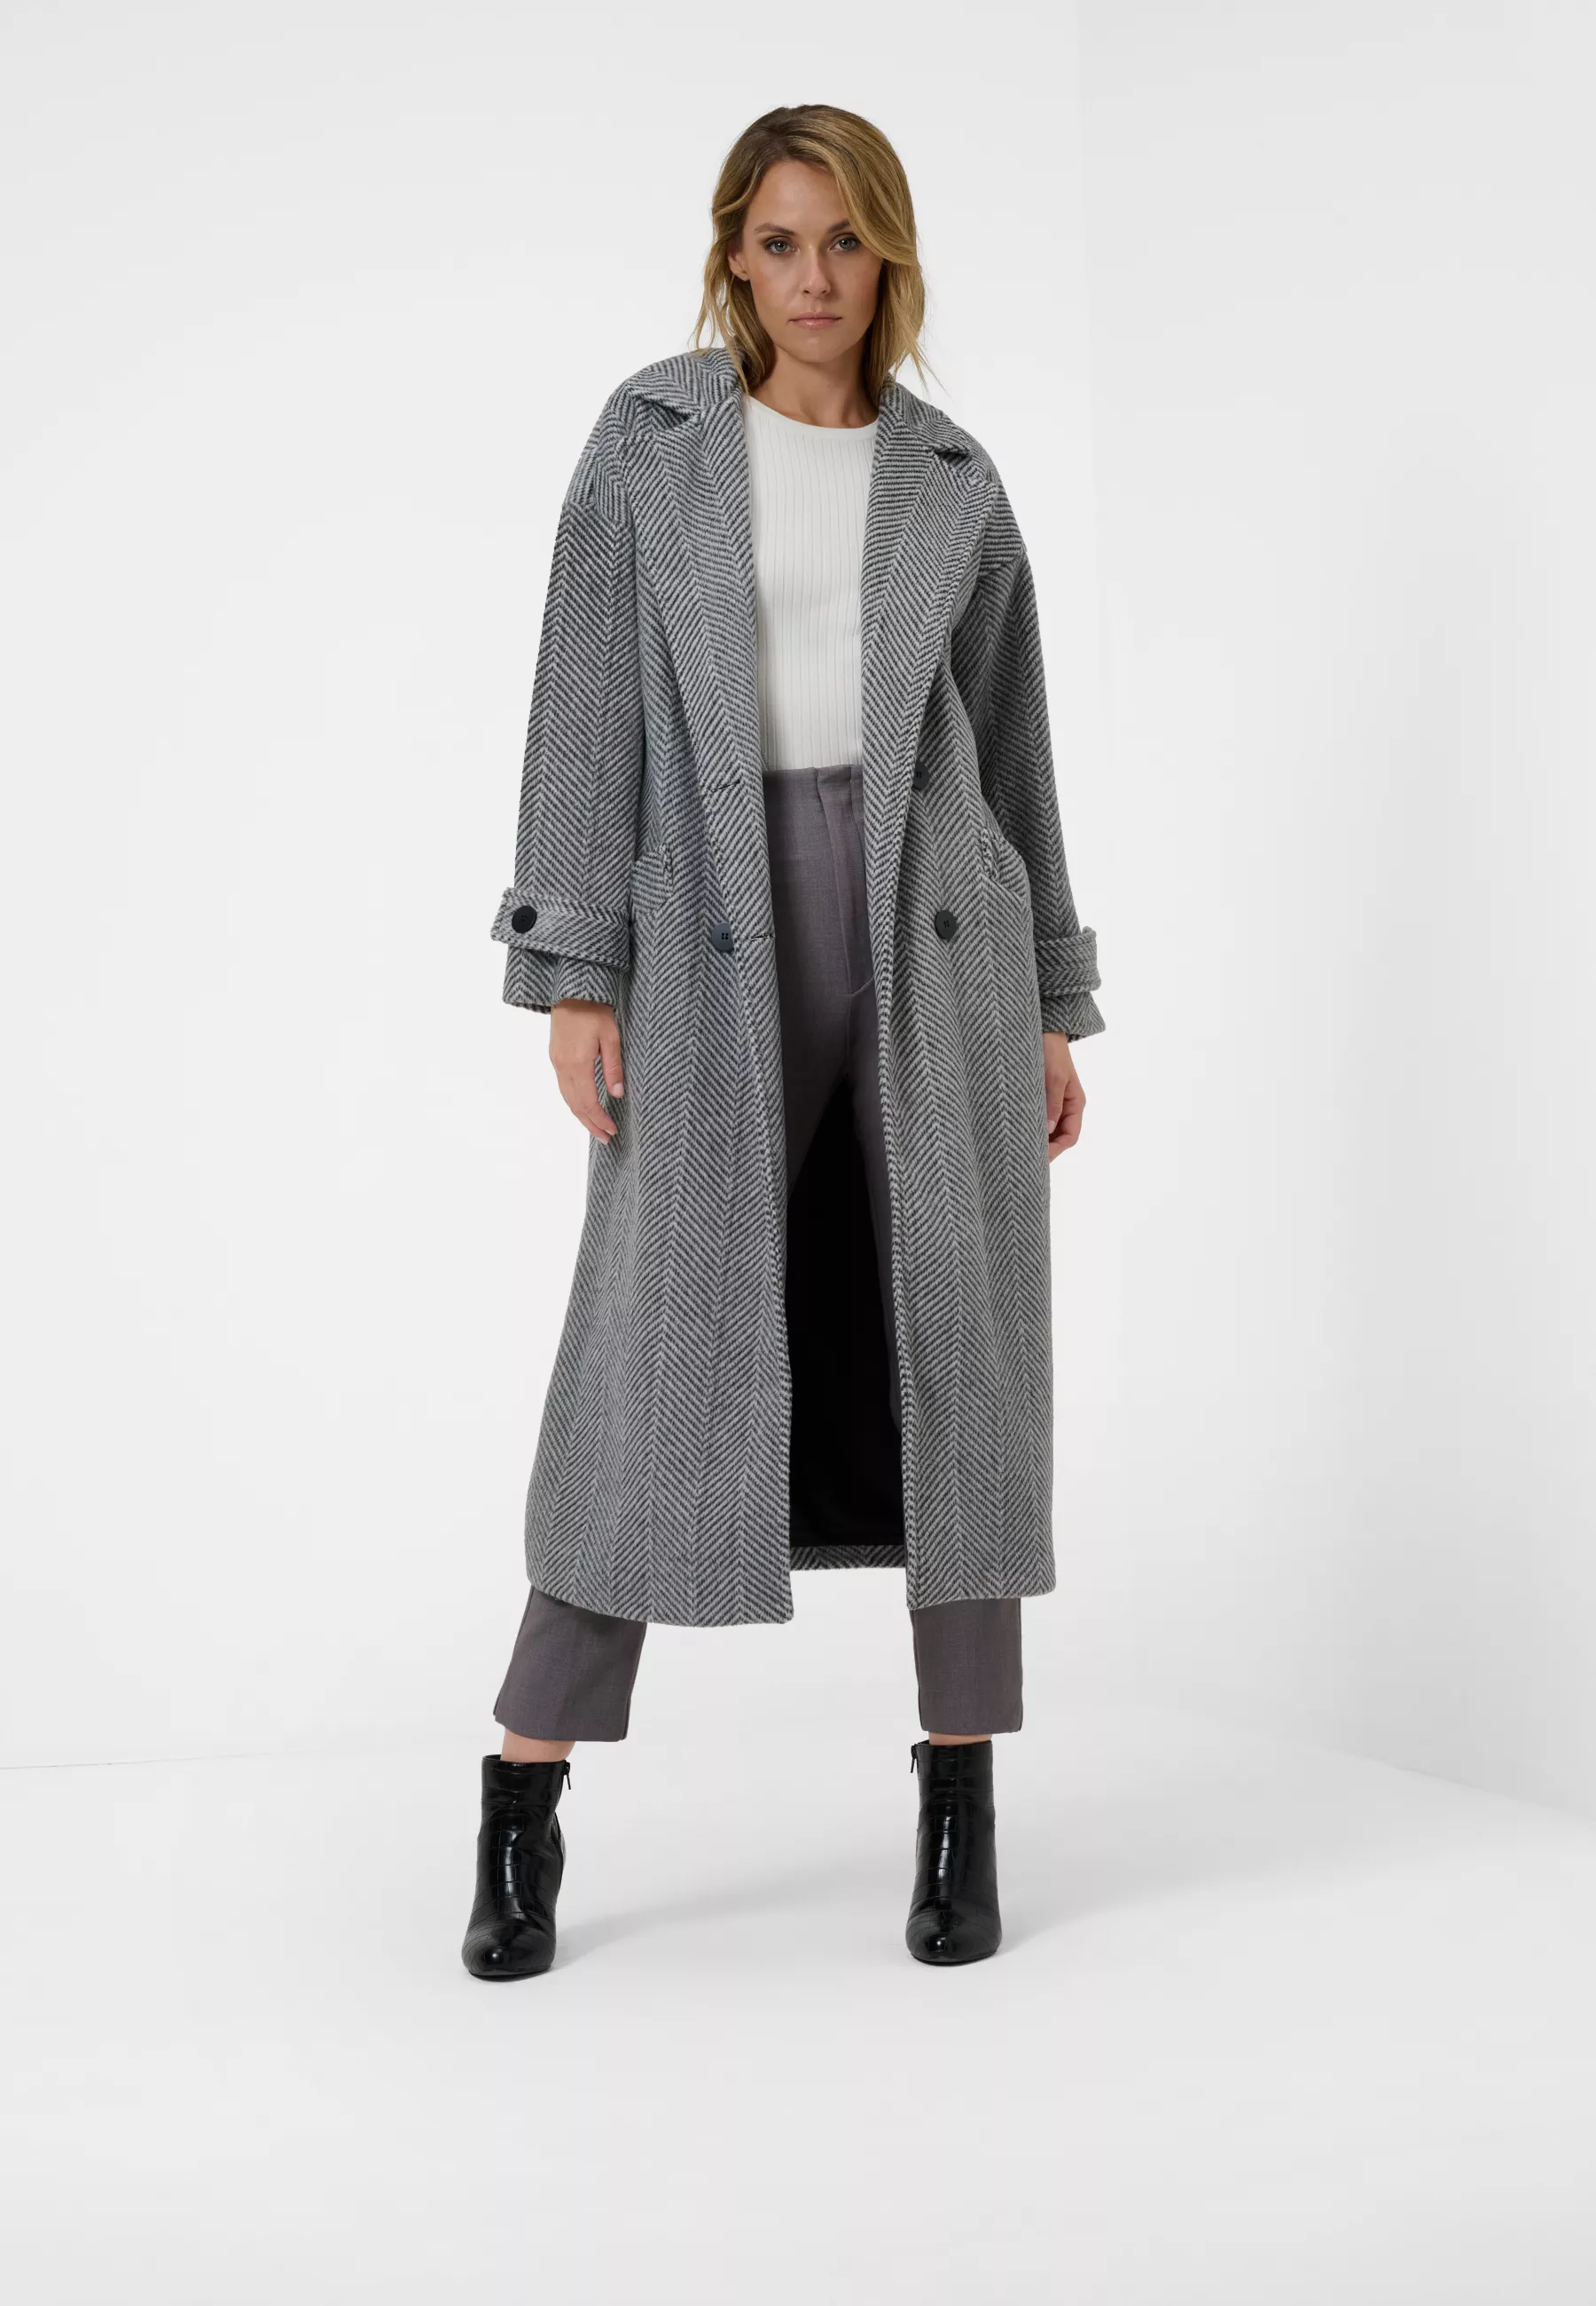 Damen Textil Mantel Franca in Grau gestreift von Ricano, Frontansicht am Model